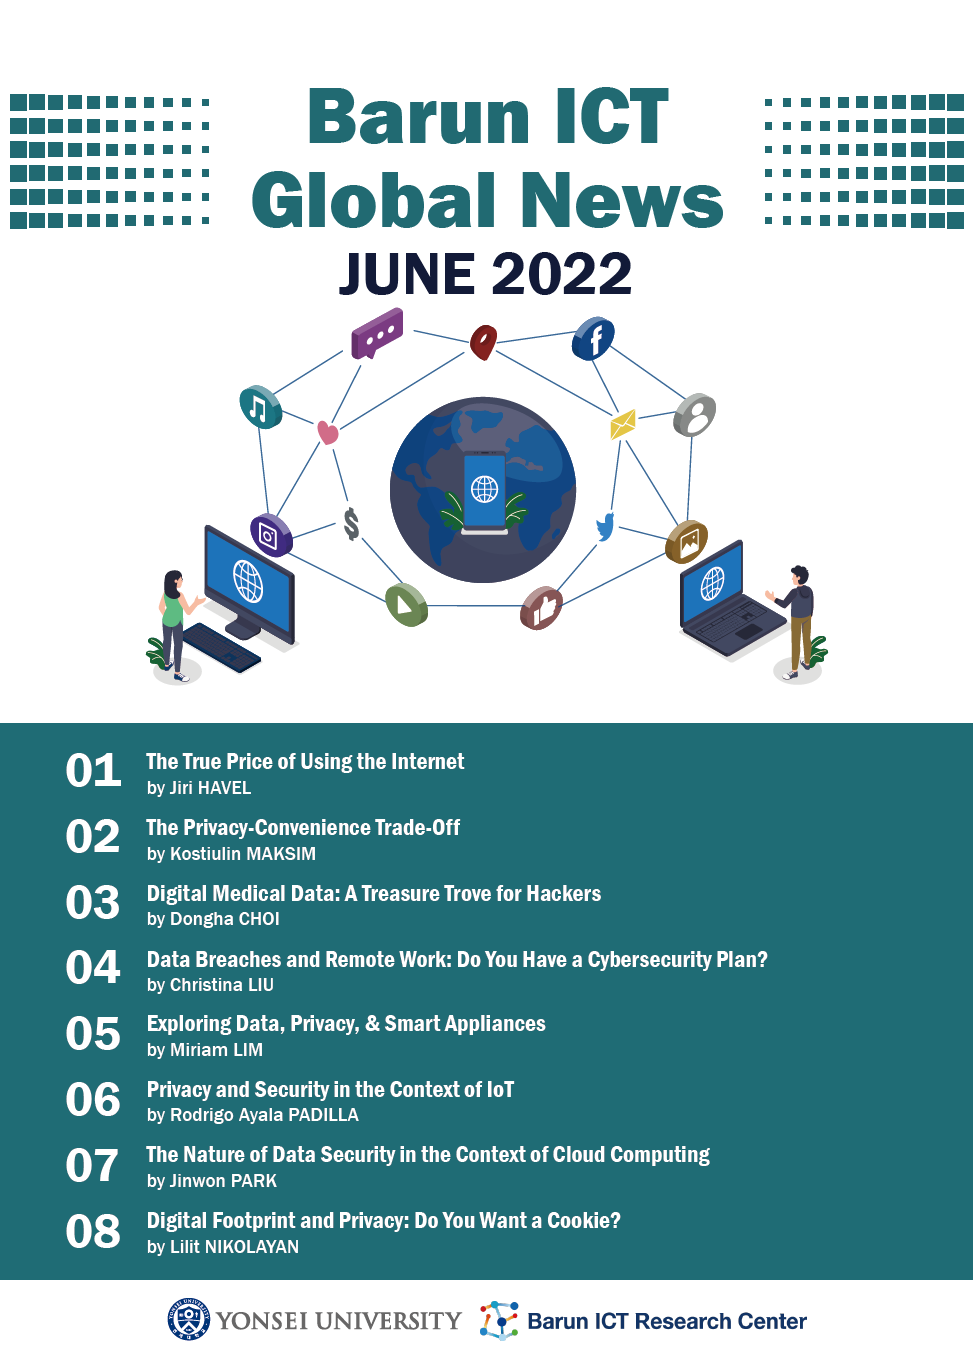 Barun ICT Global News June 2022